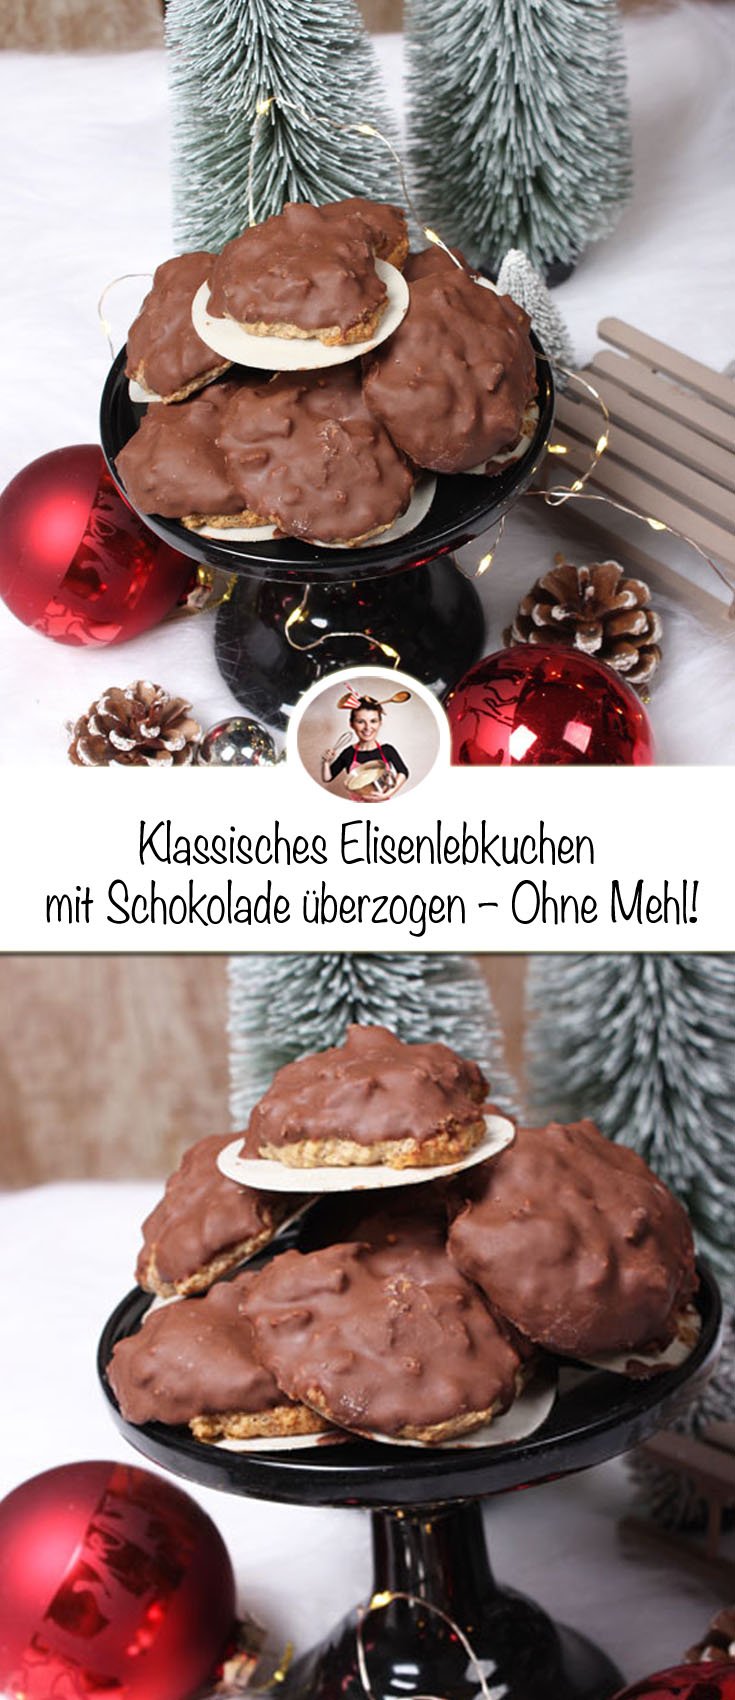 Klassisches elisenlebkuchen rezept mit schokolade überzogen - ohne mehl! 6